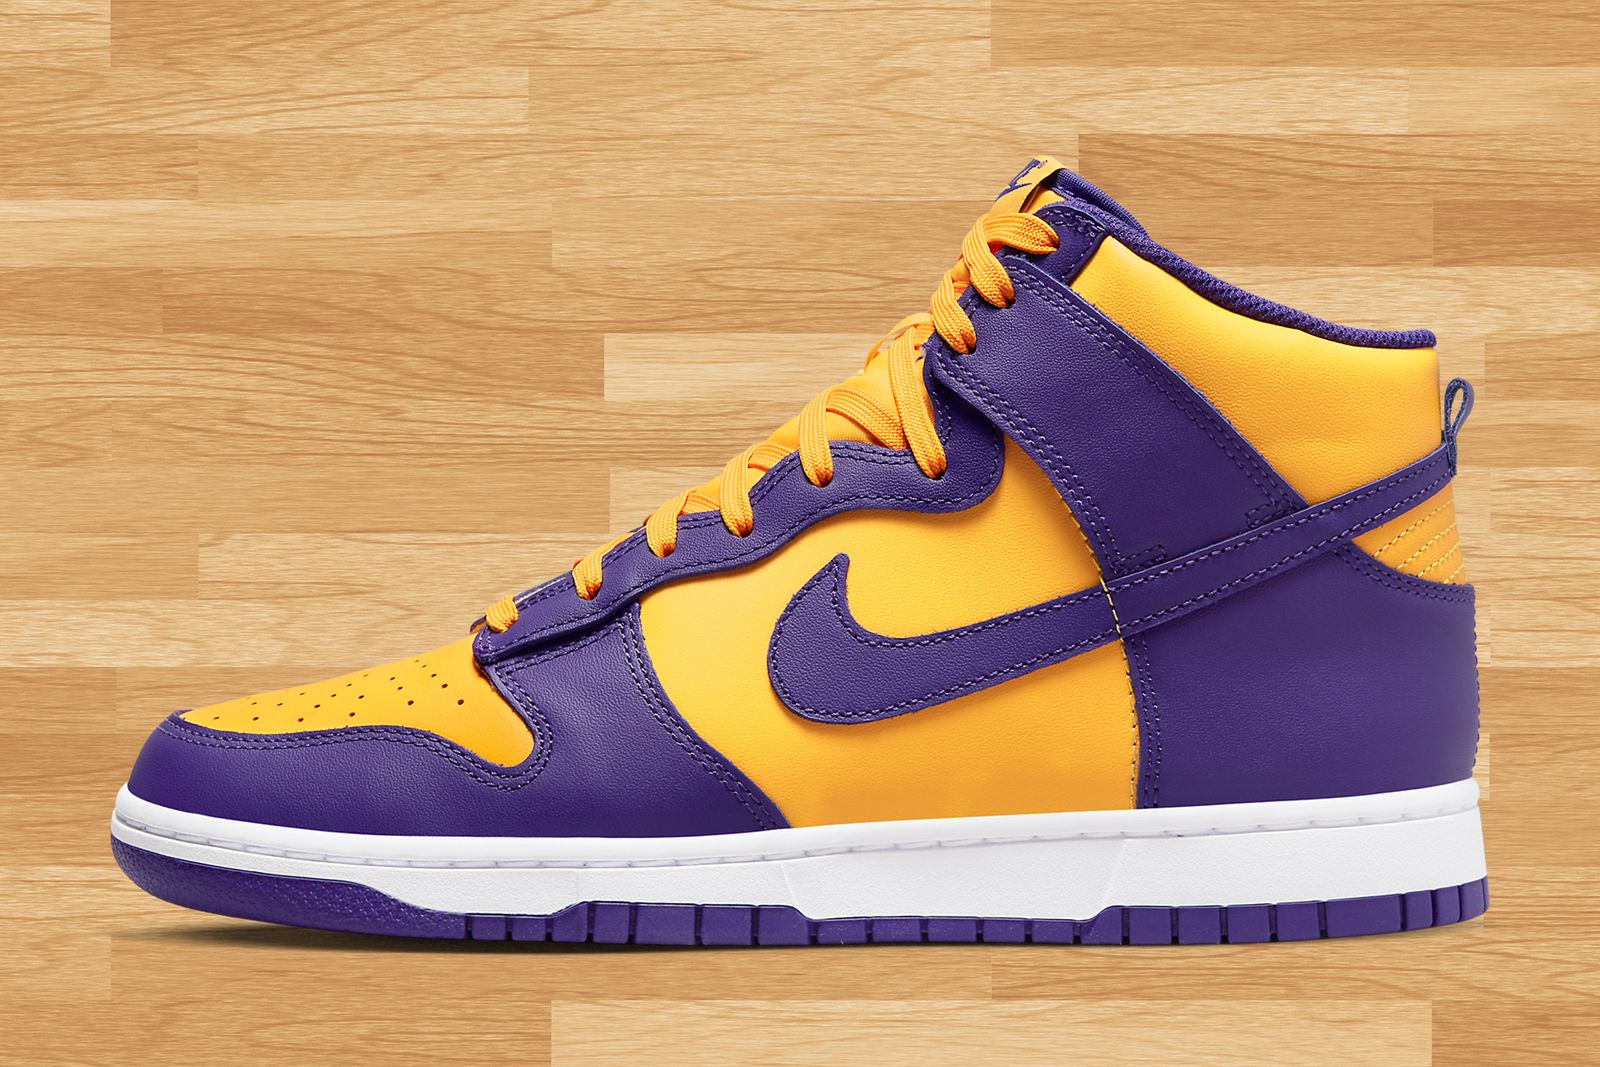 Release Date: Nike Dunk High ‘Lakers’ - Sneaker Freaker